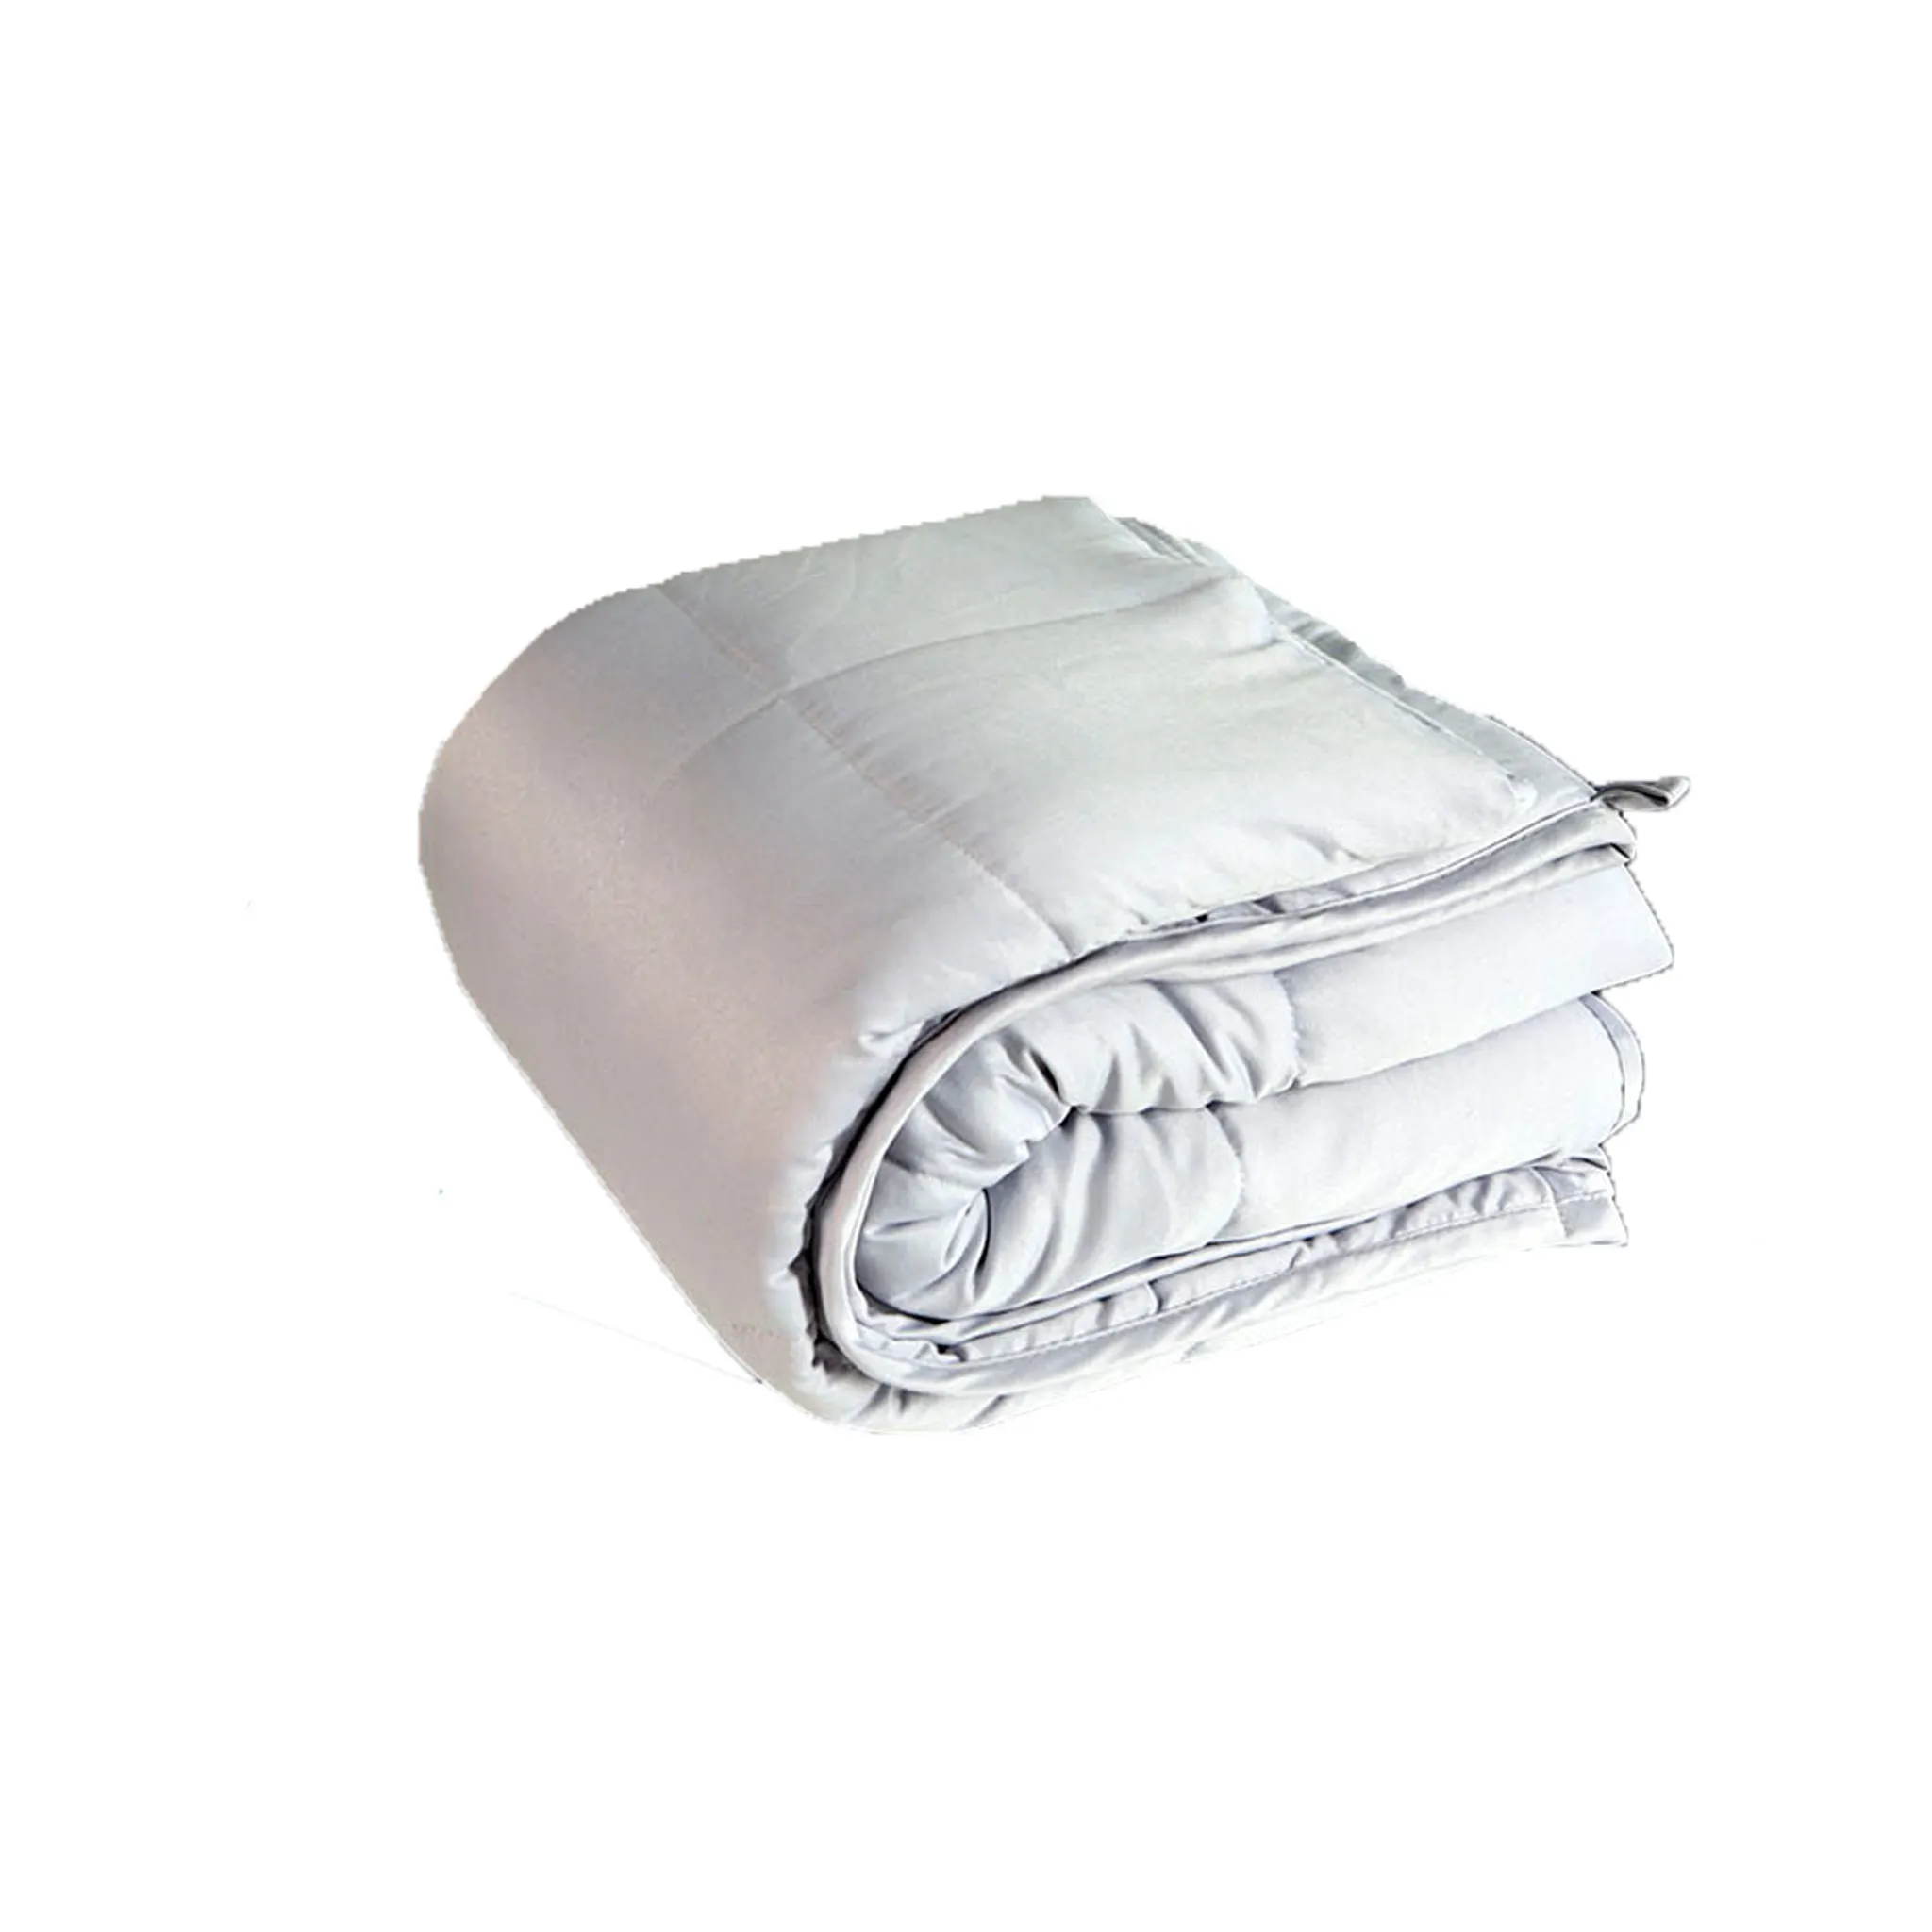 kaufland.de | Restform® Sleep - Therapiedecke mit 4 kg Gewichtsdecke Beschwerte Decke Beruhigende Decke Weighted Blanket, Aus der TV Werbung